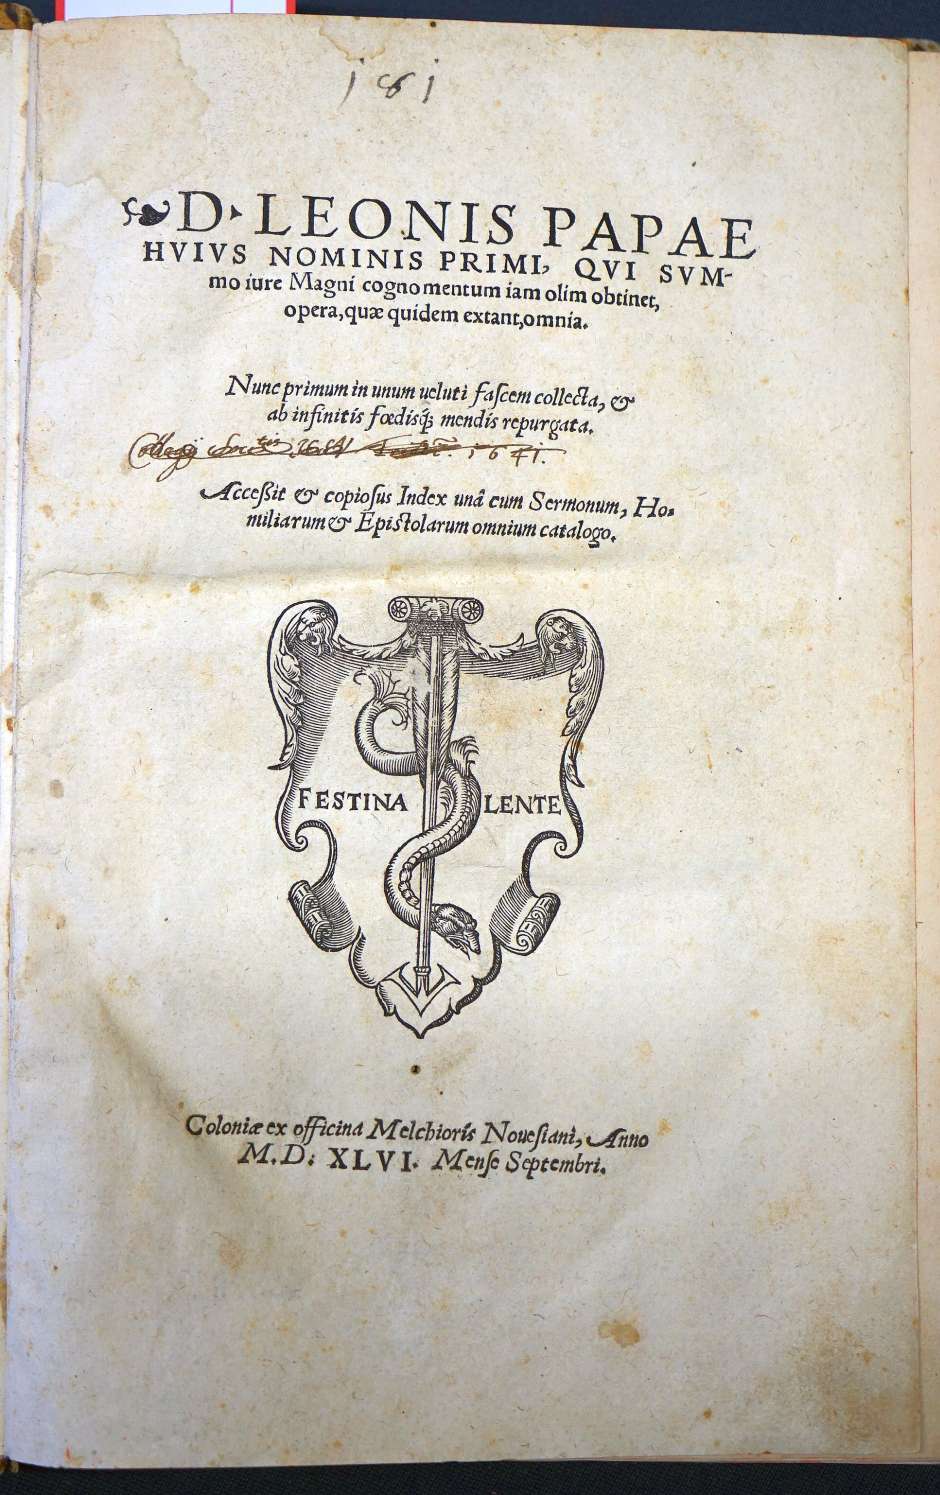 Lot 1135, Auction  115, Leo I., Papst, Huius nominis primi